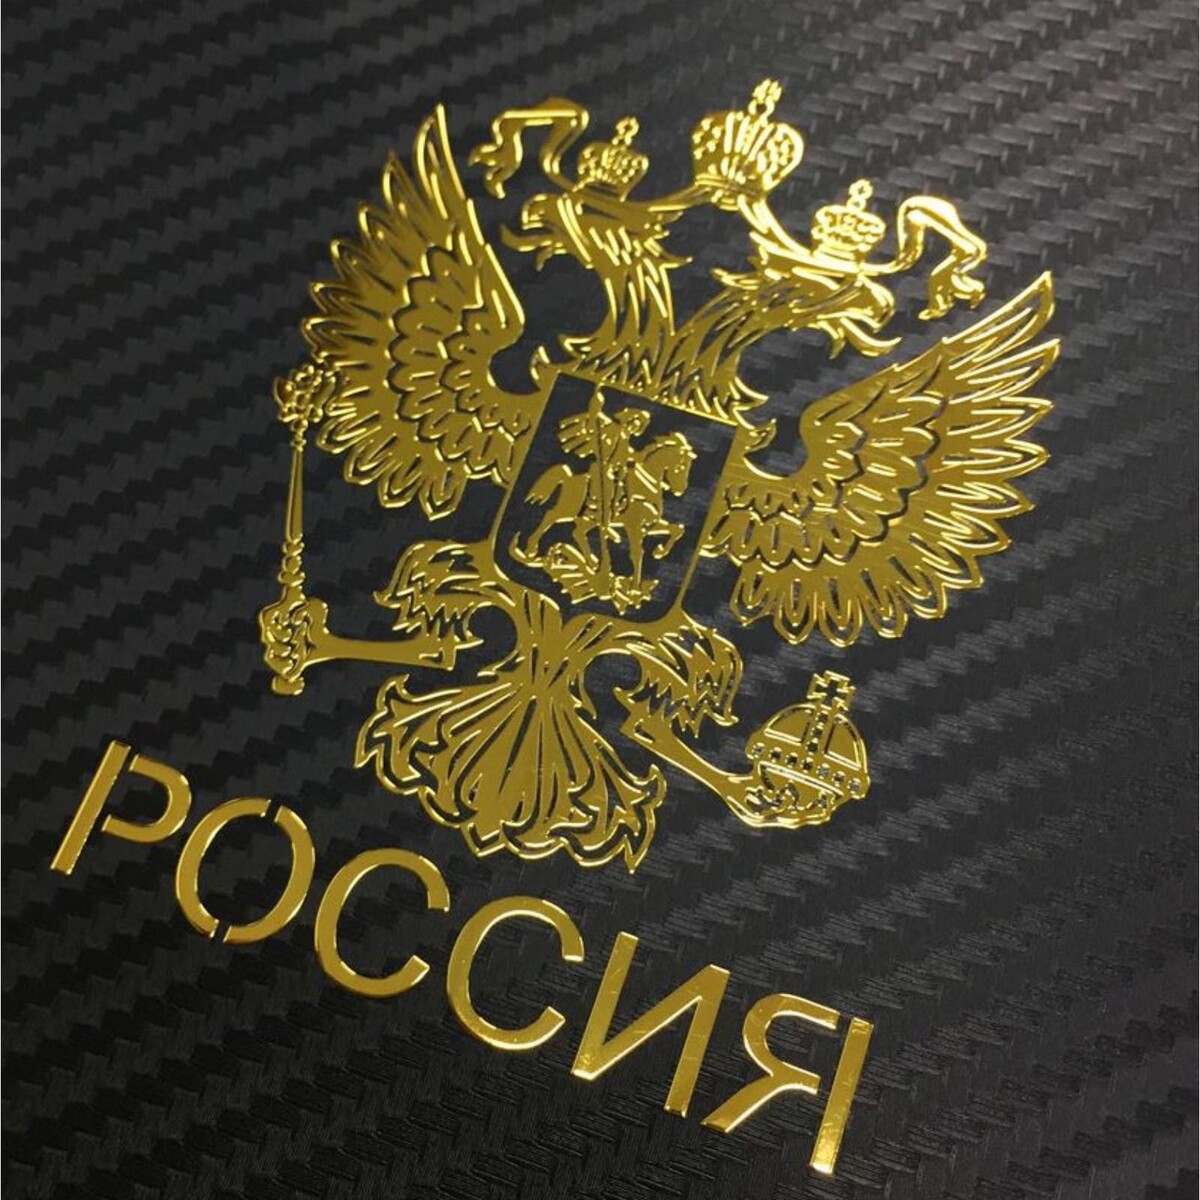 Наклейка на авто, герб россии, 9.1×7 см, золотистый о россии